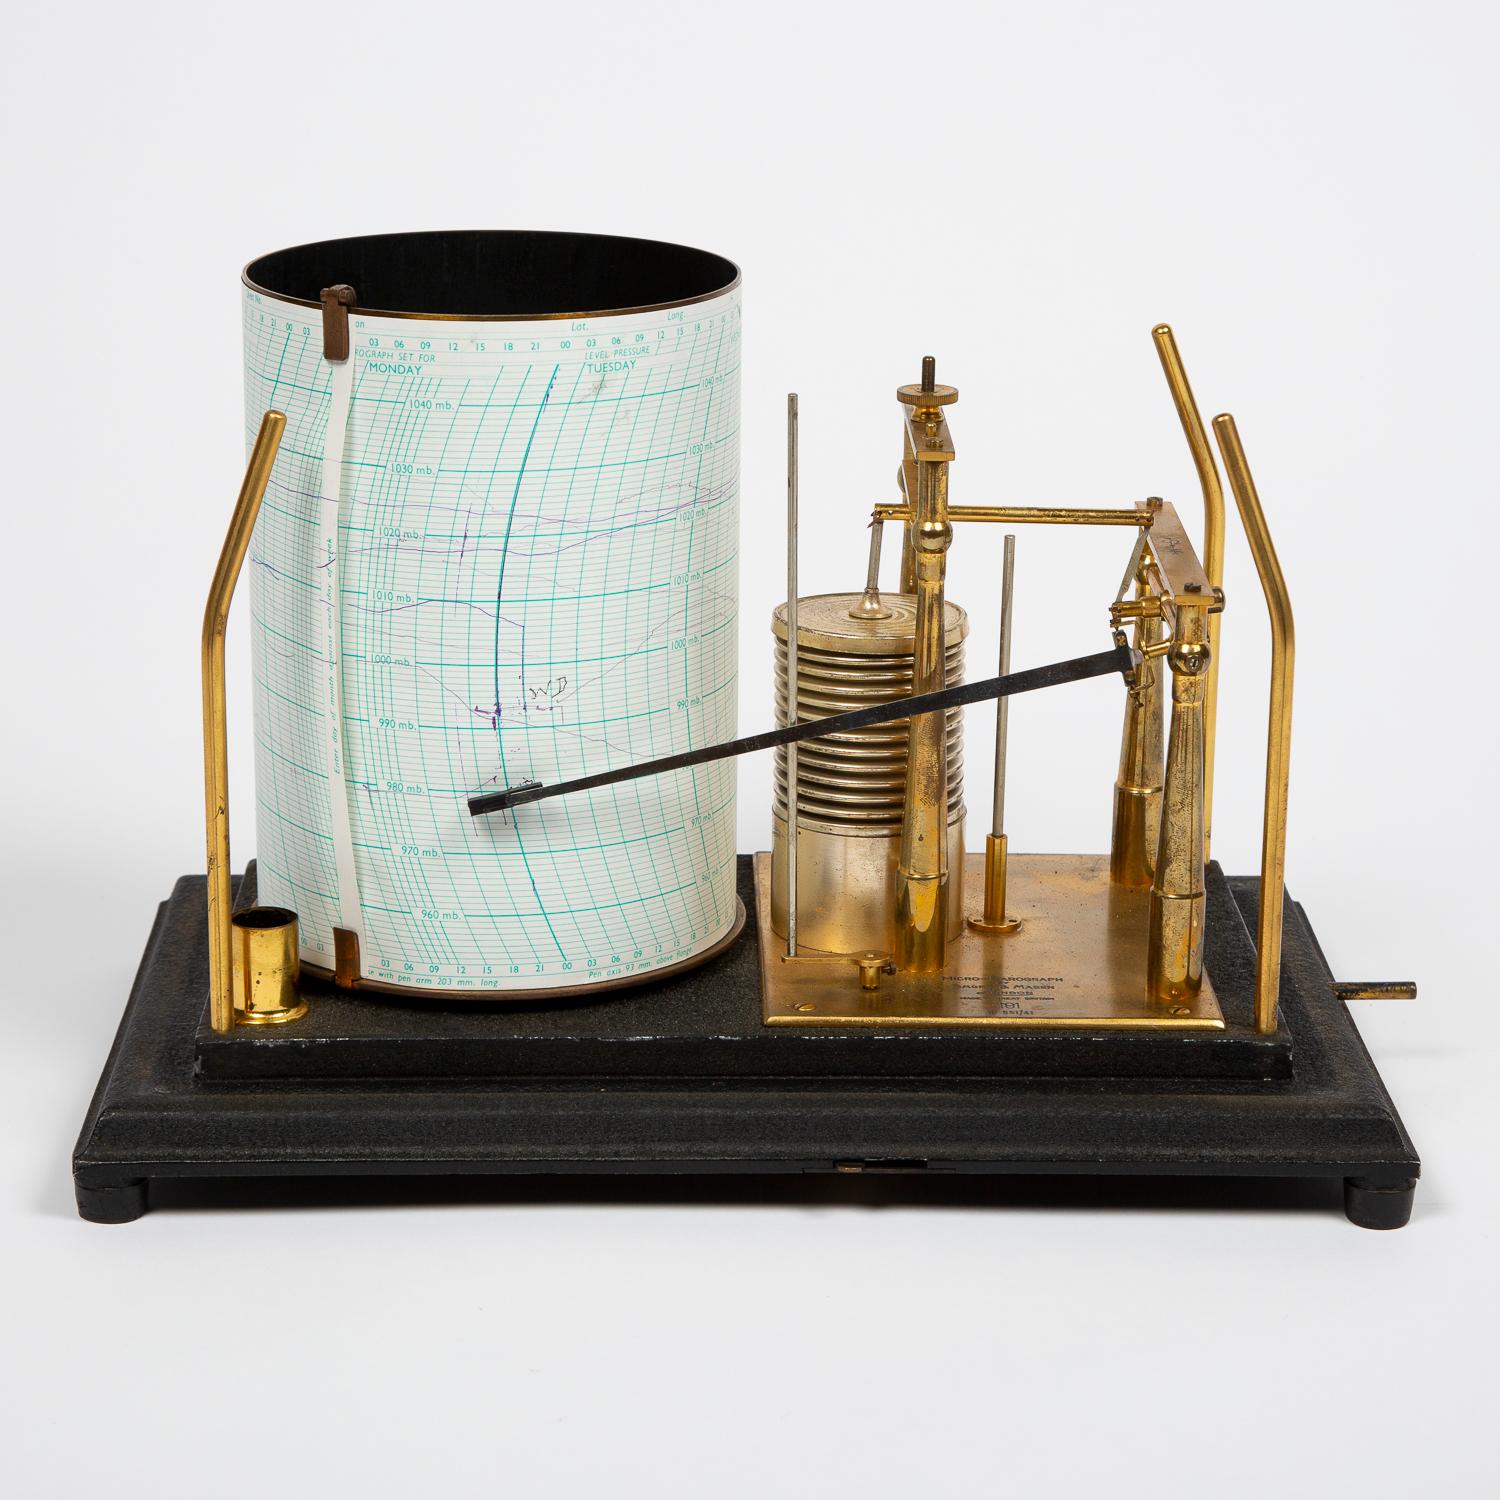 Un micro-barographe à échelle ouverte par Short & Mason de Londres dans un boîtier en verre émaillé.

Numéro : 551/41

Entraînement par horloge de sept jours par Horstmann Gear Co Ltd, de Bath. Numéro de série : 7027/59

Avec le logo 